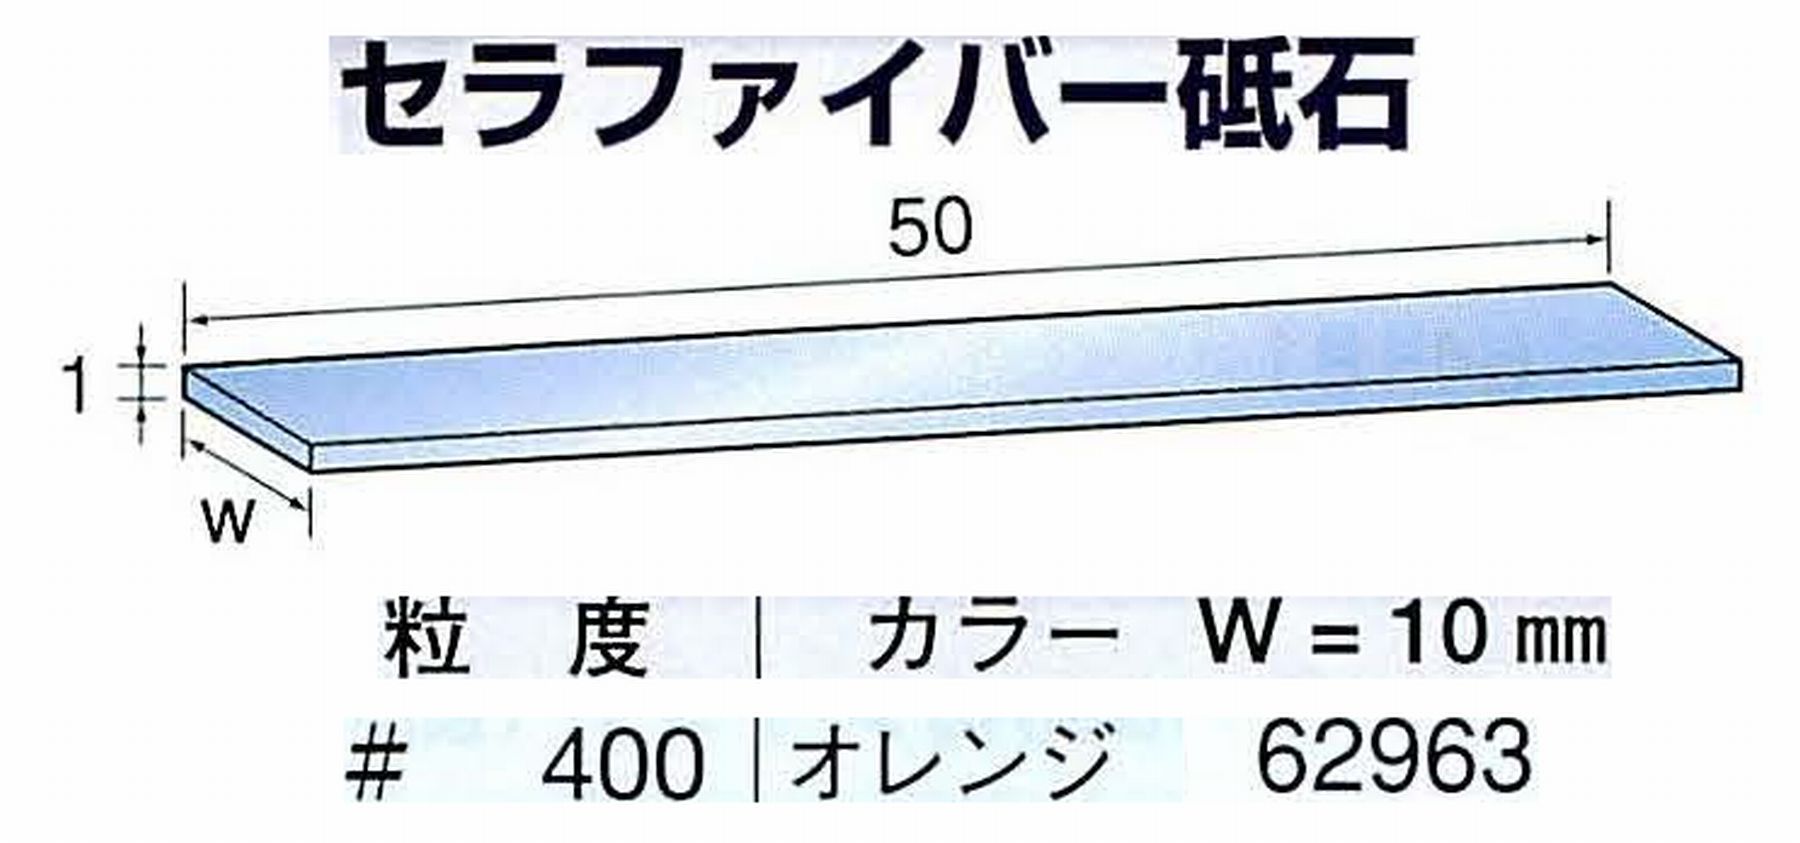 ナカニシ/NAKANISHI ペンシルタイプ 電動・エアーヤスリ(左右動) スイングラスター専用工具 セラファイバー砥石 62963